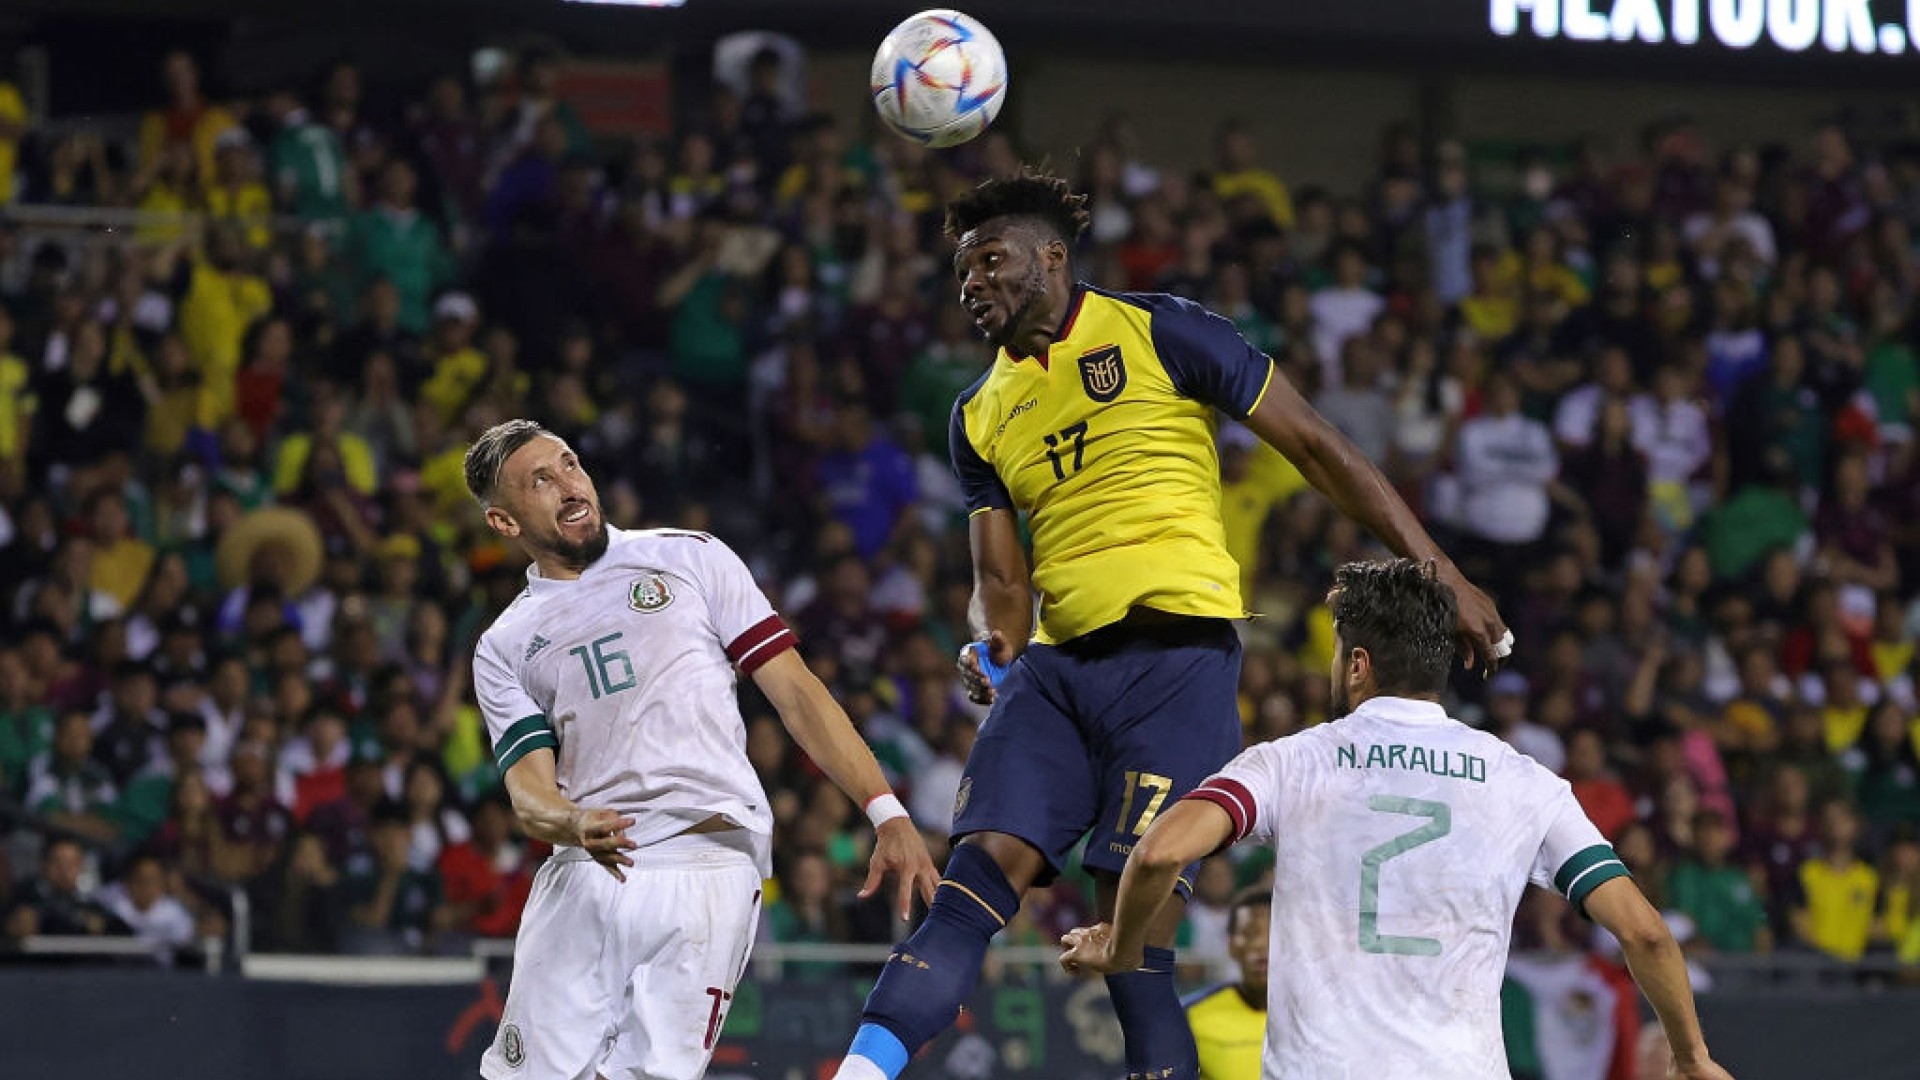 Nhan dinh thanh tich doi dau Qatar vs Ecuador